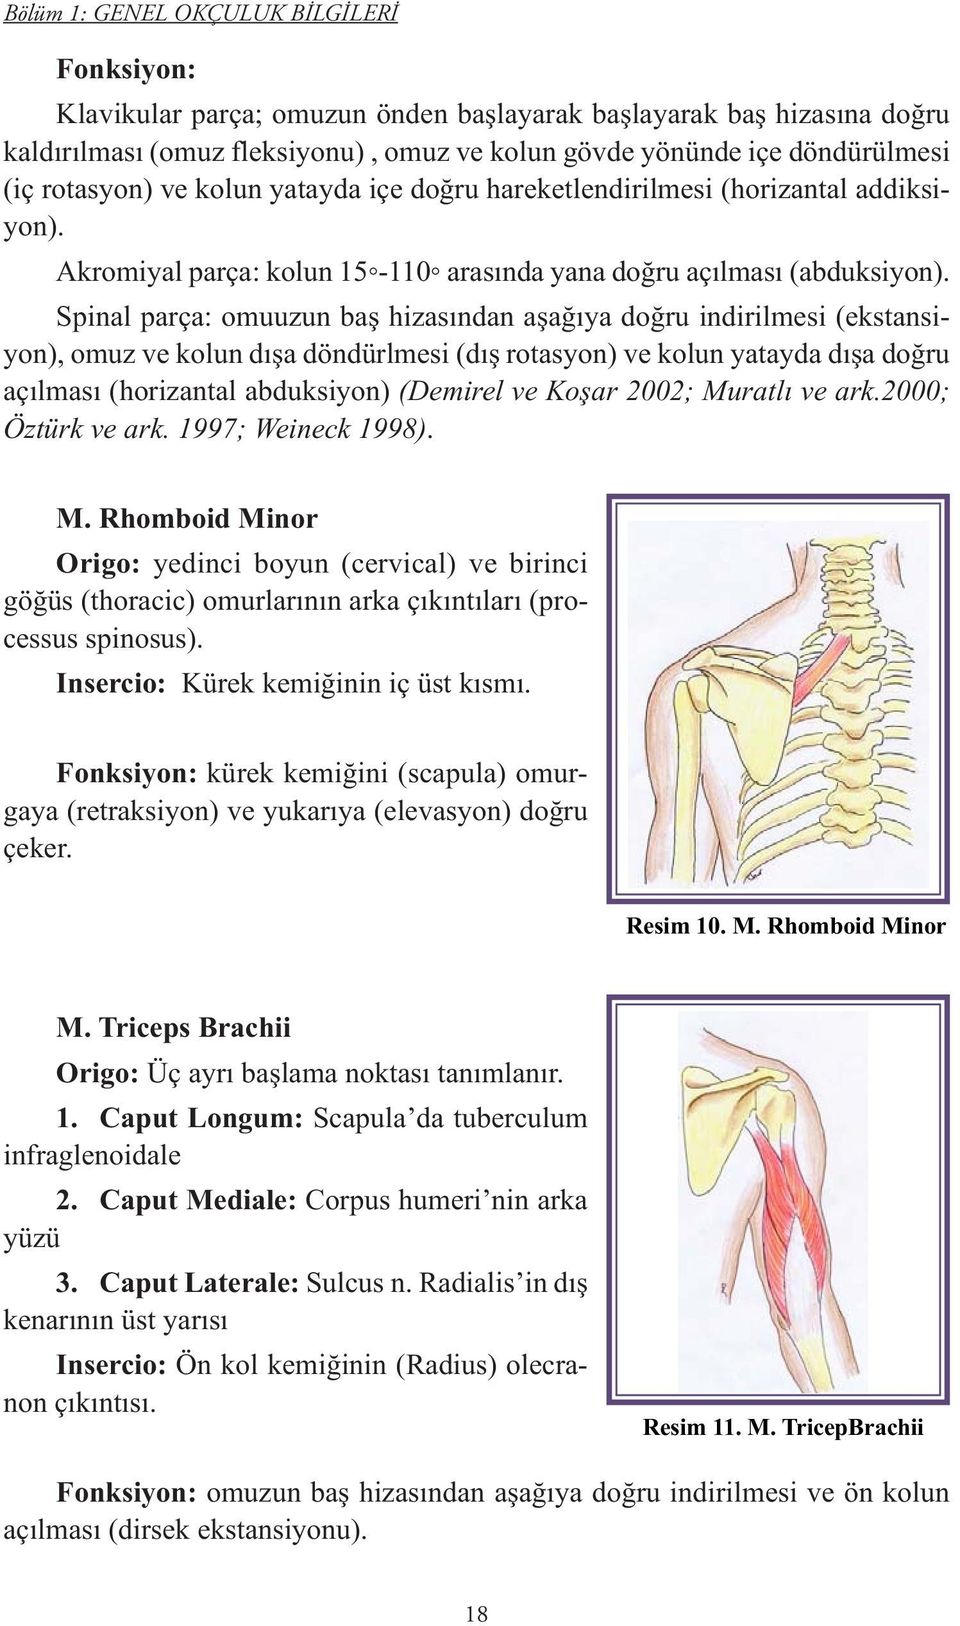 Spinal parça: omuuzun baş hizasından aşağıya doğru indirilmesi (ekstansiyon), omuz ve kolun dışa döndürlmesi (dış rotasyon) ve kolun yatayda dışa doğru açılması (horizantal abduksiyon) (Demirel ve